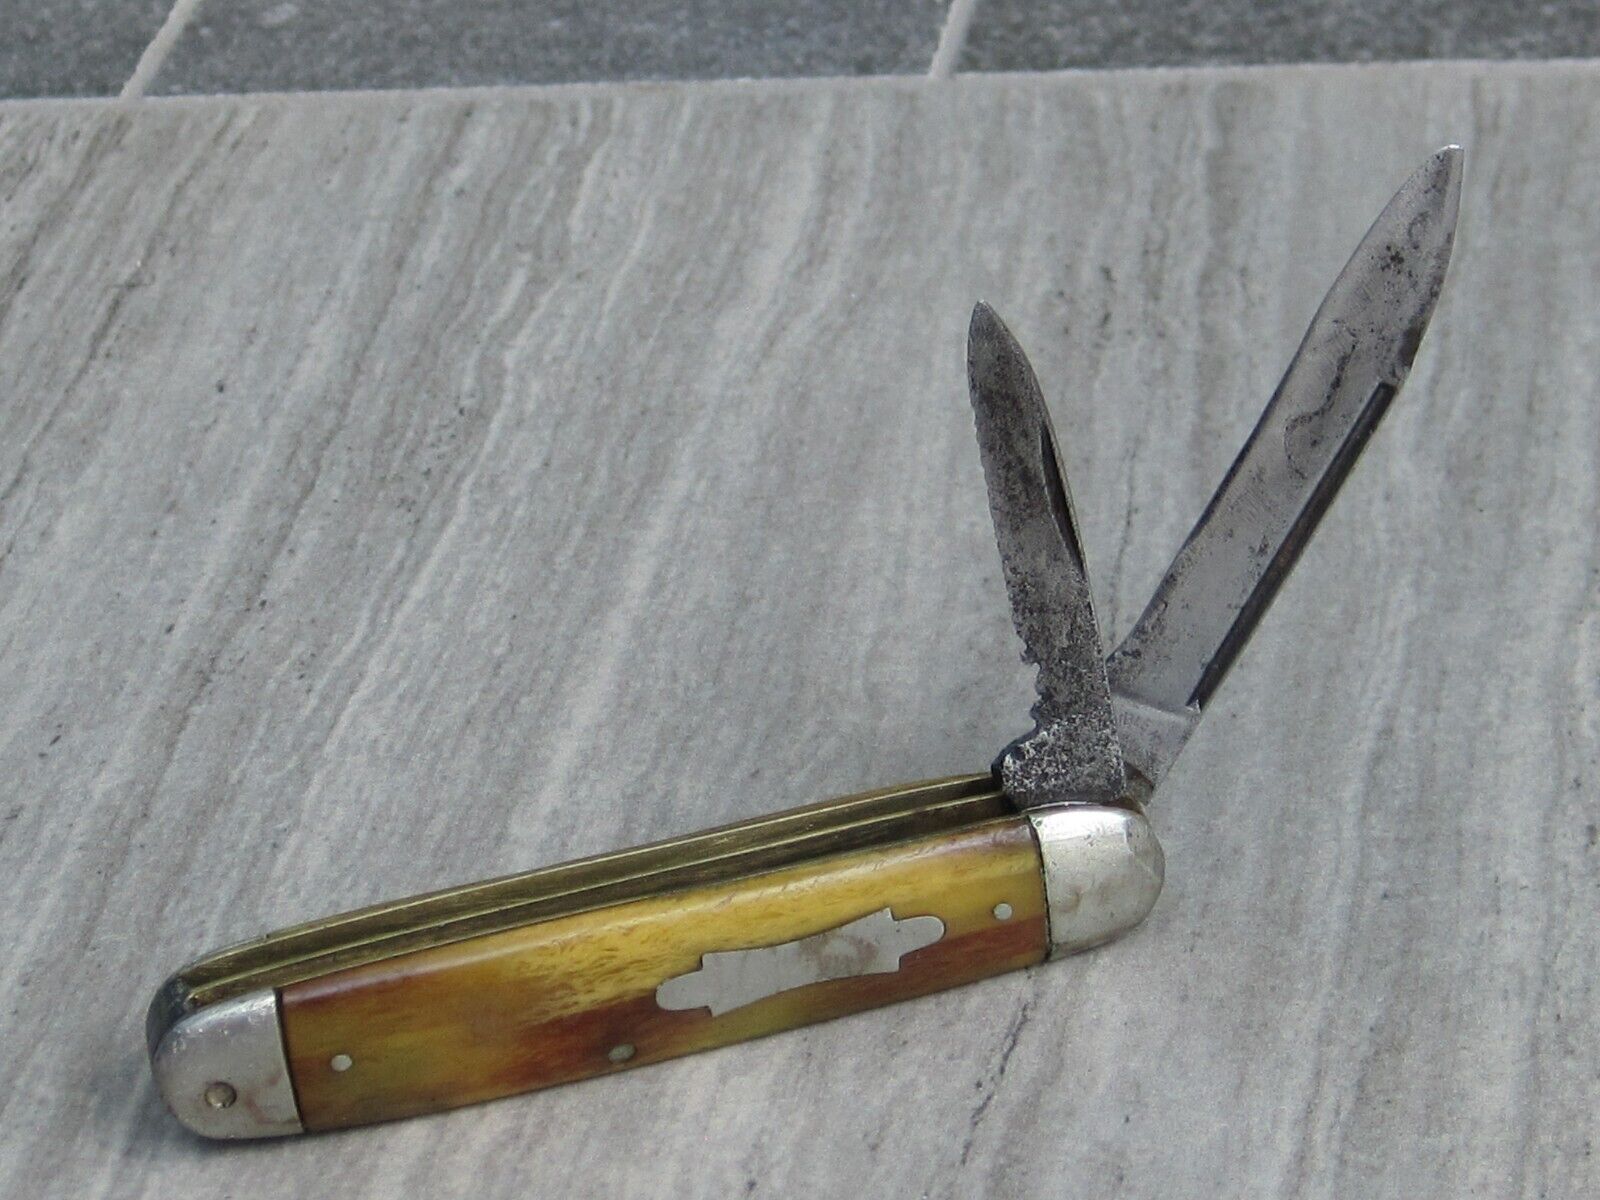 Crucible Knife Co. 2-blade antique jacknife, est. 1920s-1930s